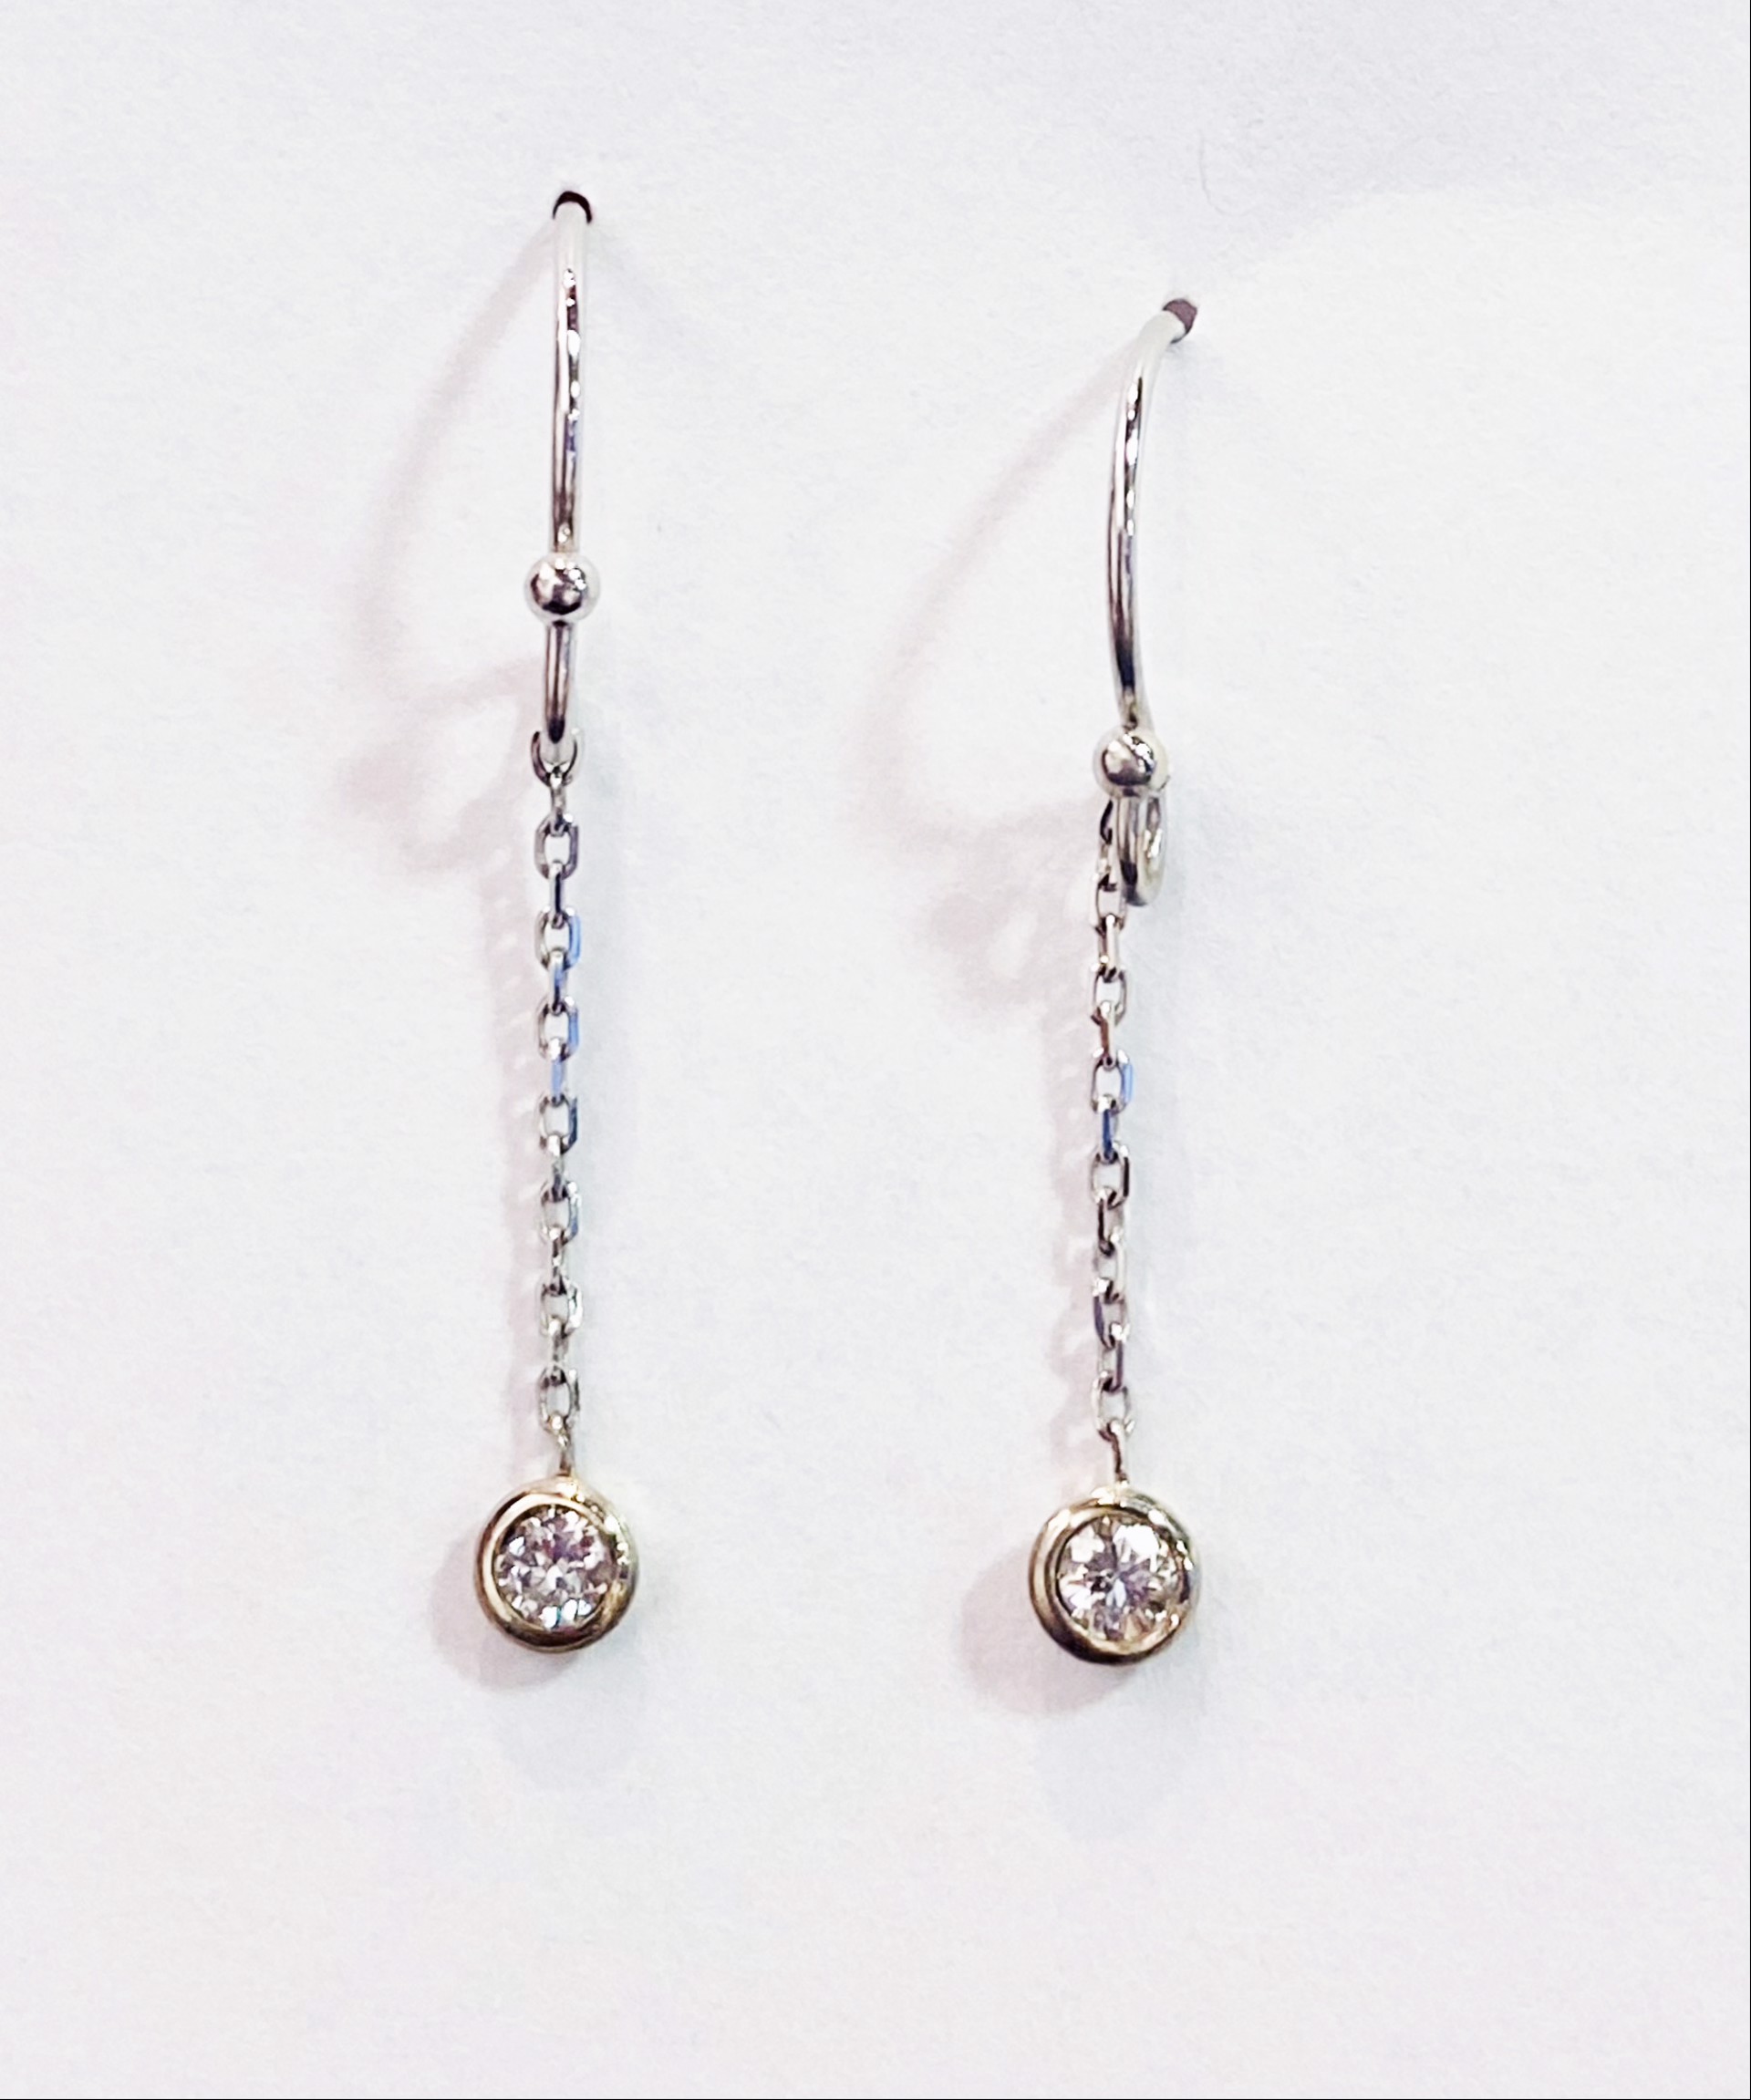 14K White Gold, Diamond Dangle Earrings by D'ETTE DELFORGE